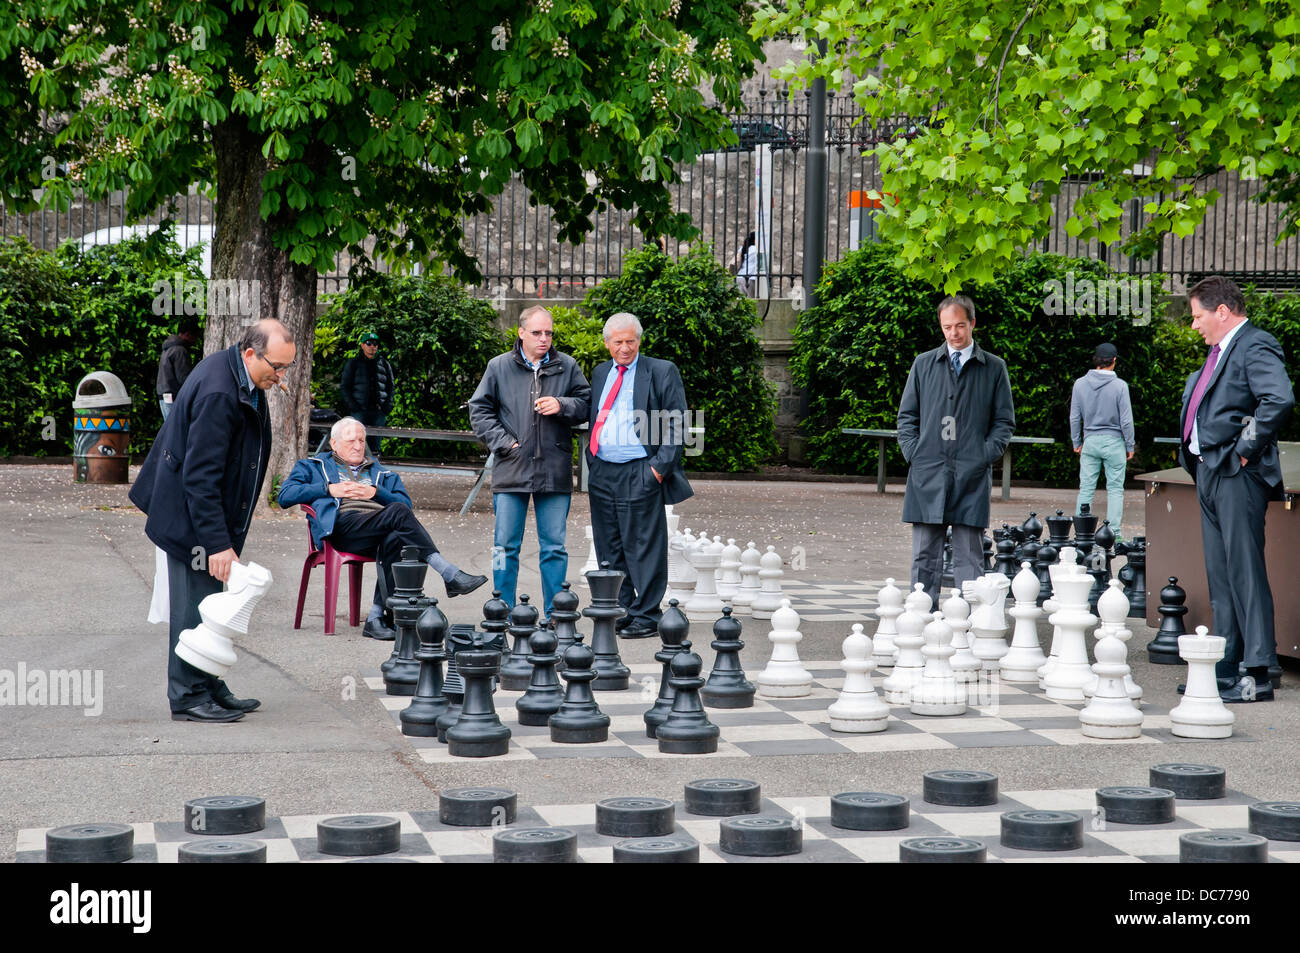 Genf Menschen spielen Schach im Park, Genf, Schweiz, Europa Stockfotografie  - Alamy